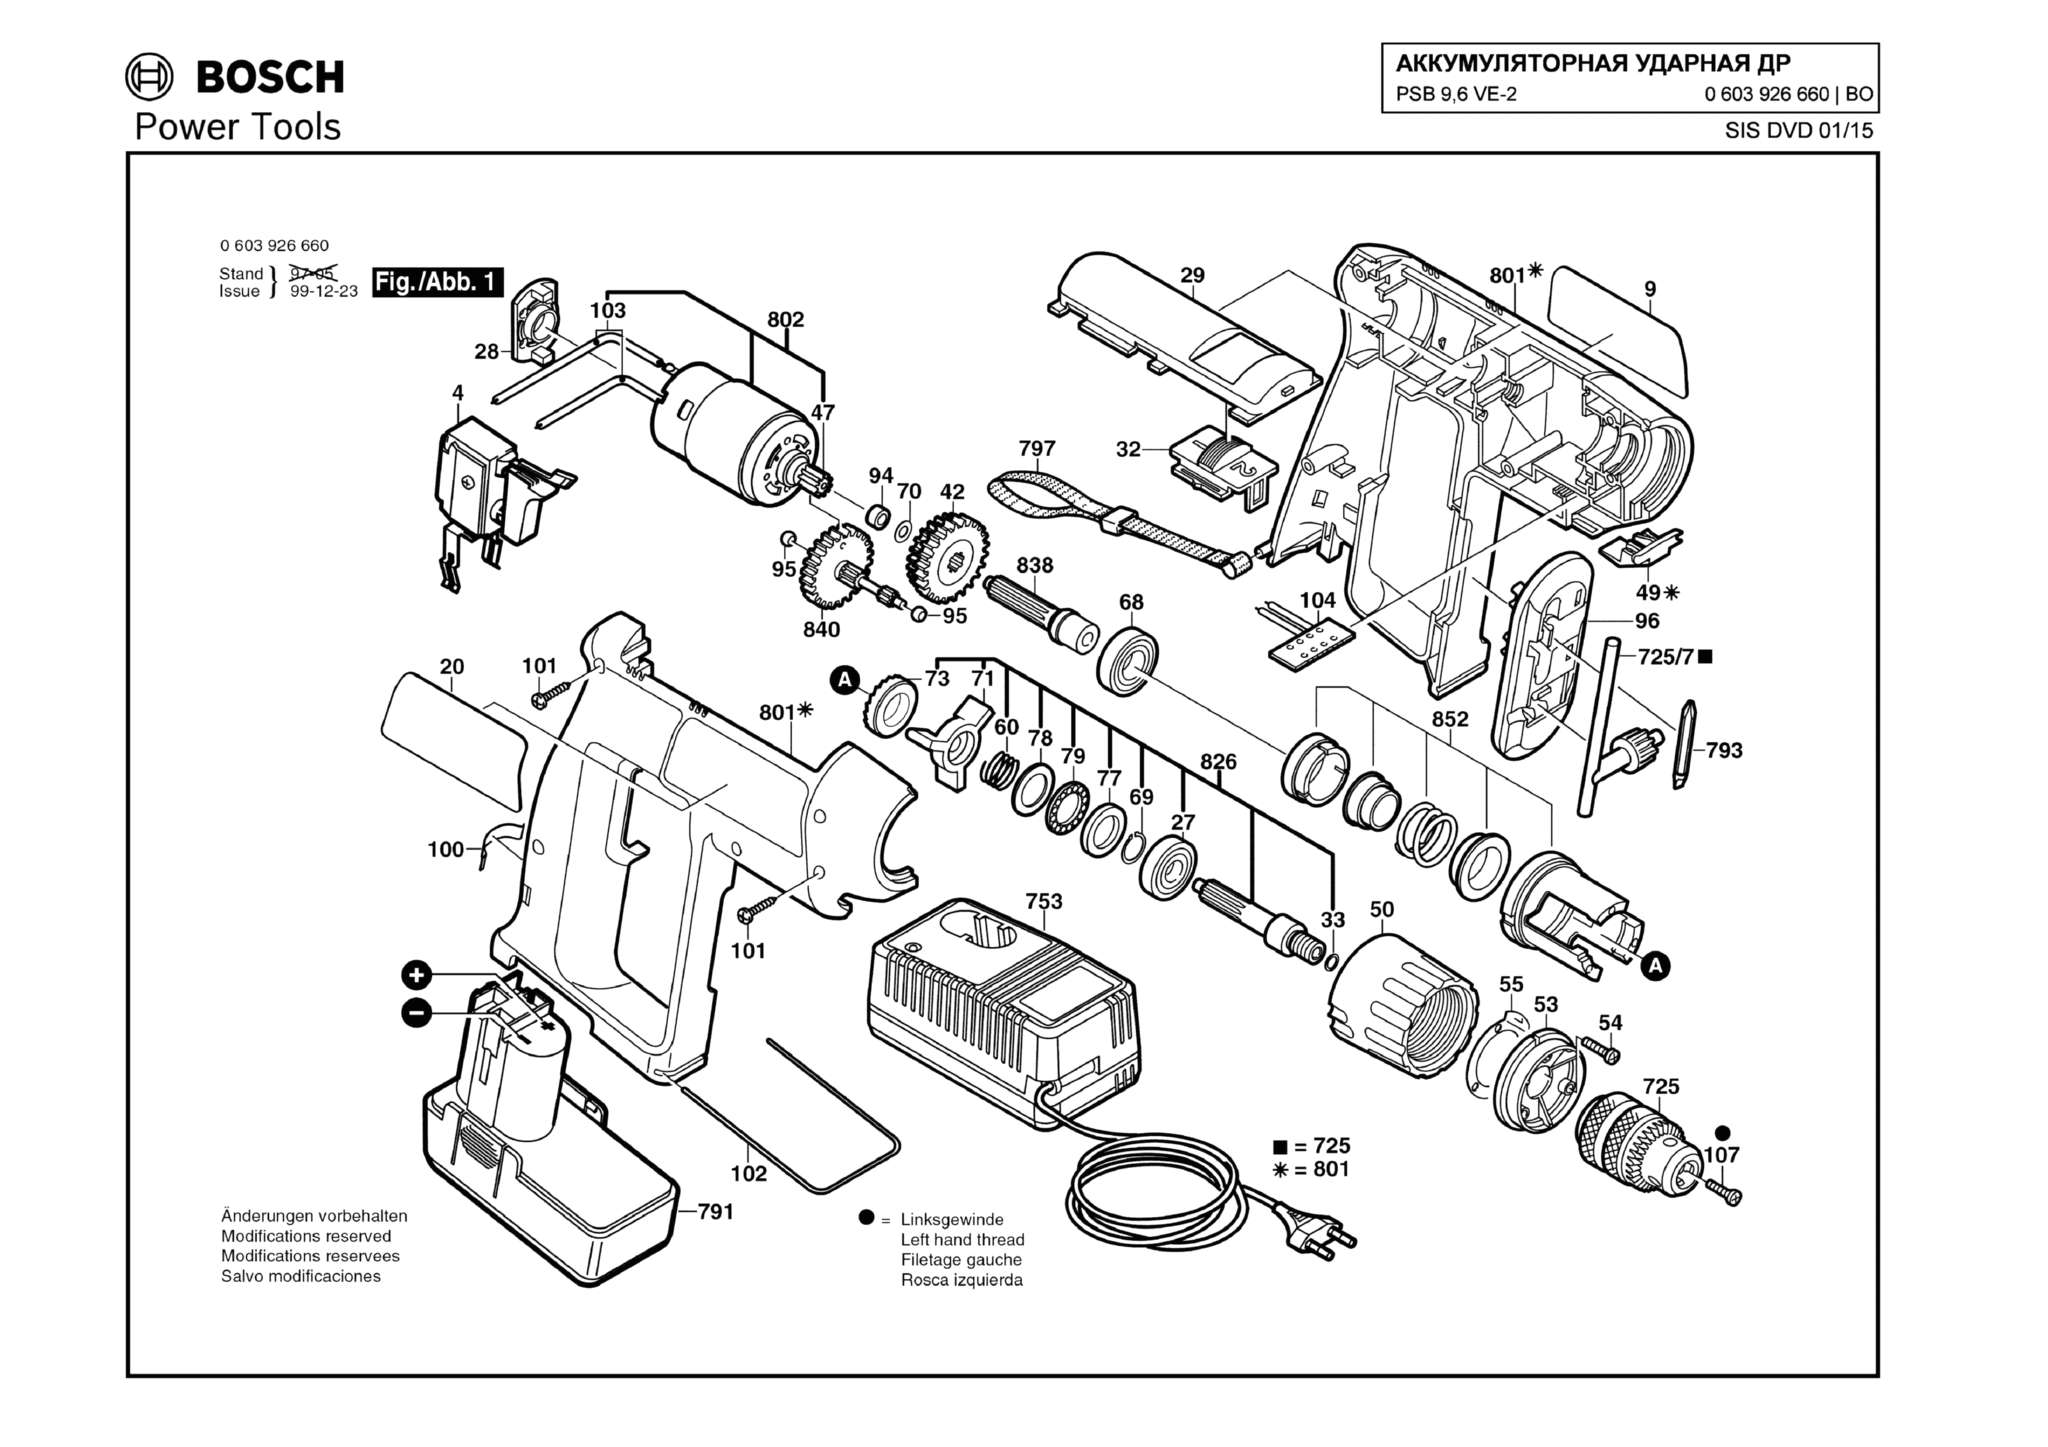 Запчасти, схема и деталировка Bosch PSB 9,6 VE-2 (ТИП 0603926660)